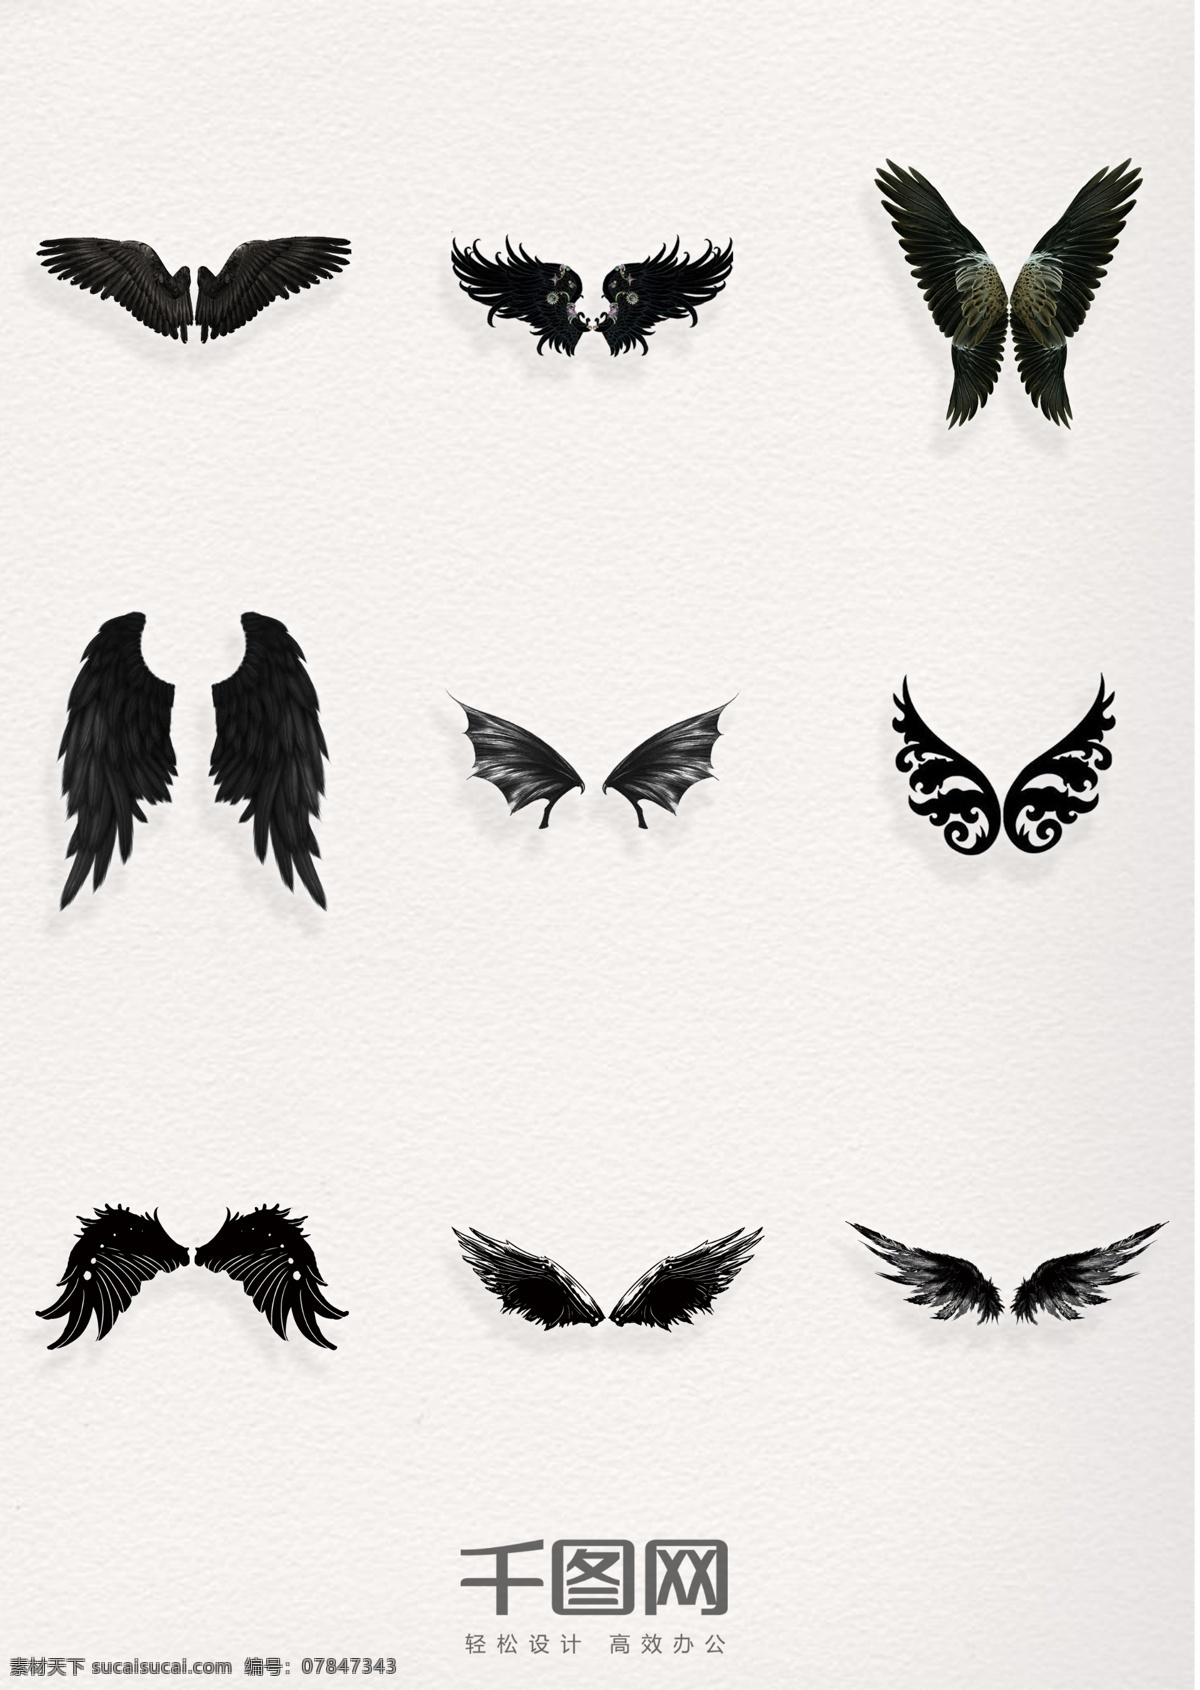 手绘 黑色 翅膀 装饰 元素 手绘装饰 黑色翅膀装饰 翅膀装饰 翅膀元素 手绘元素